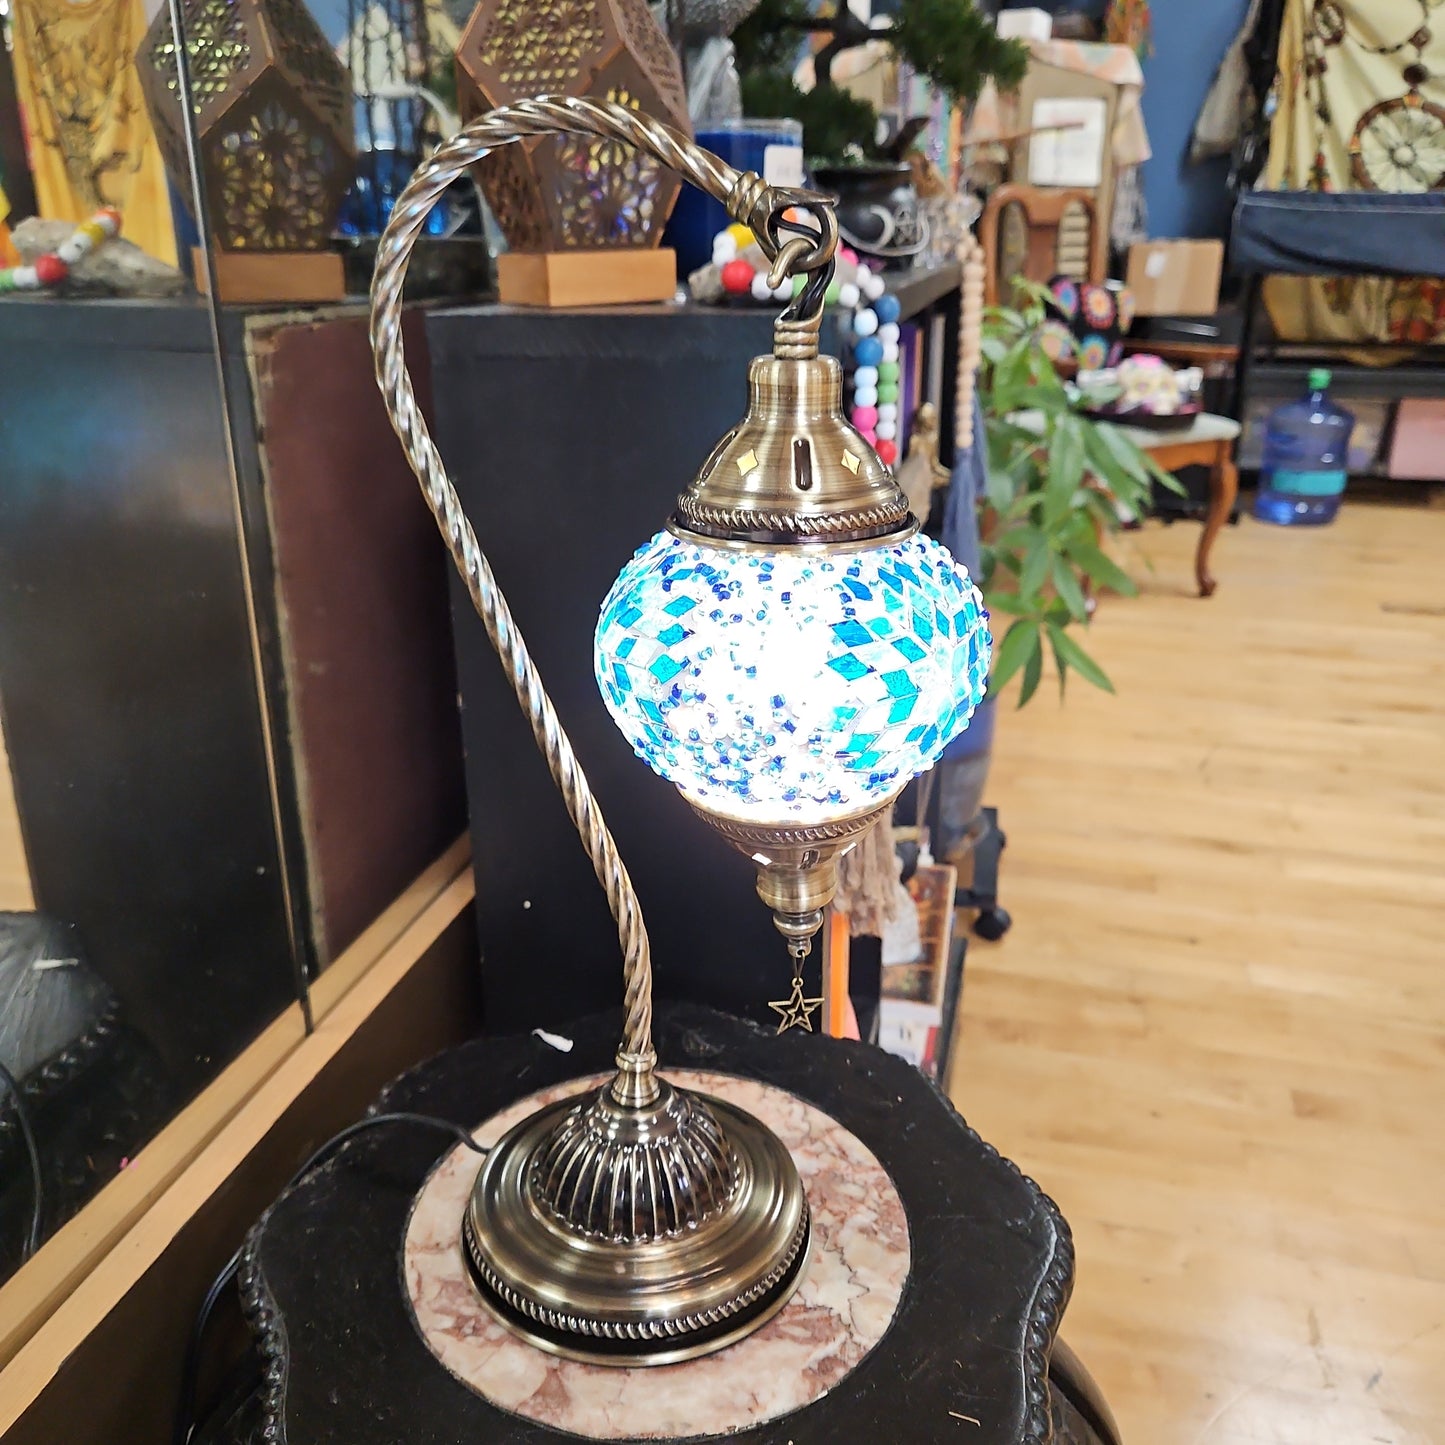 Handmade Mosaic Hanging Lamp  15 1/2"  ( Turkish lamps ) Blue Starburst